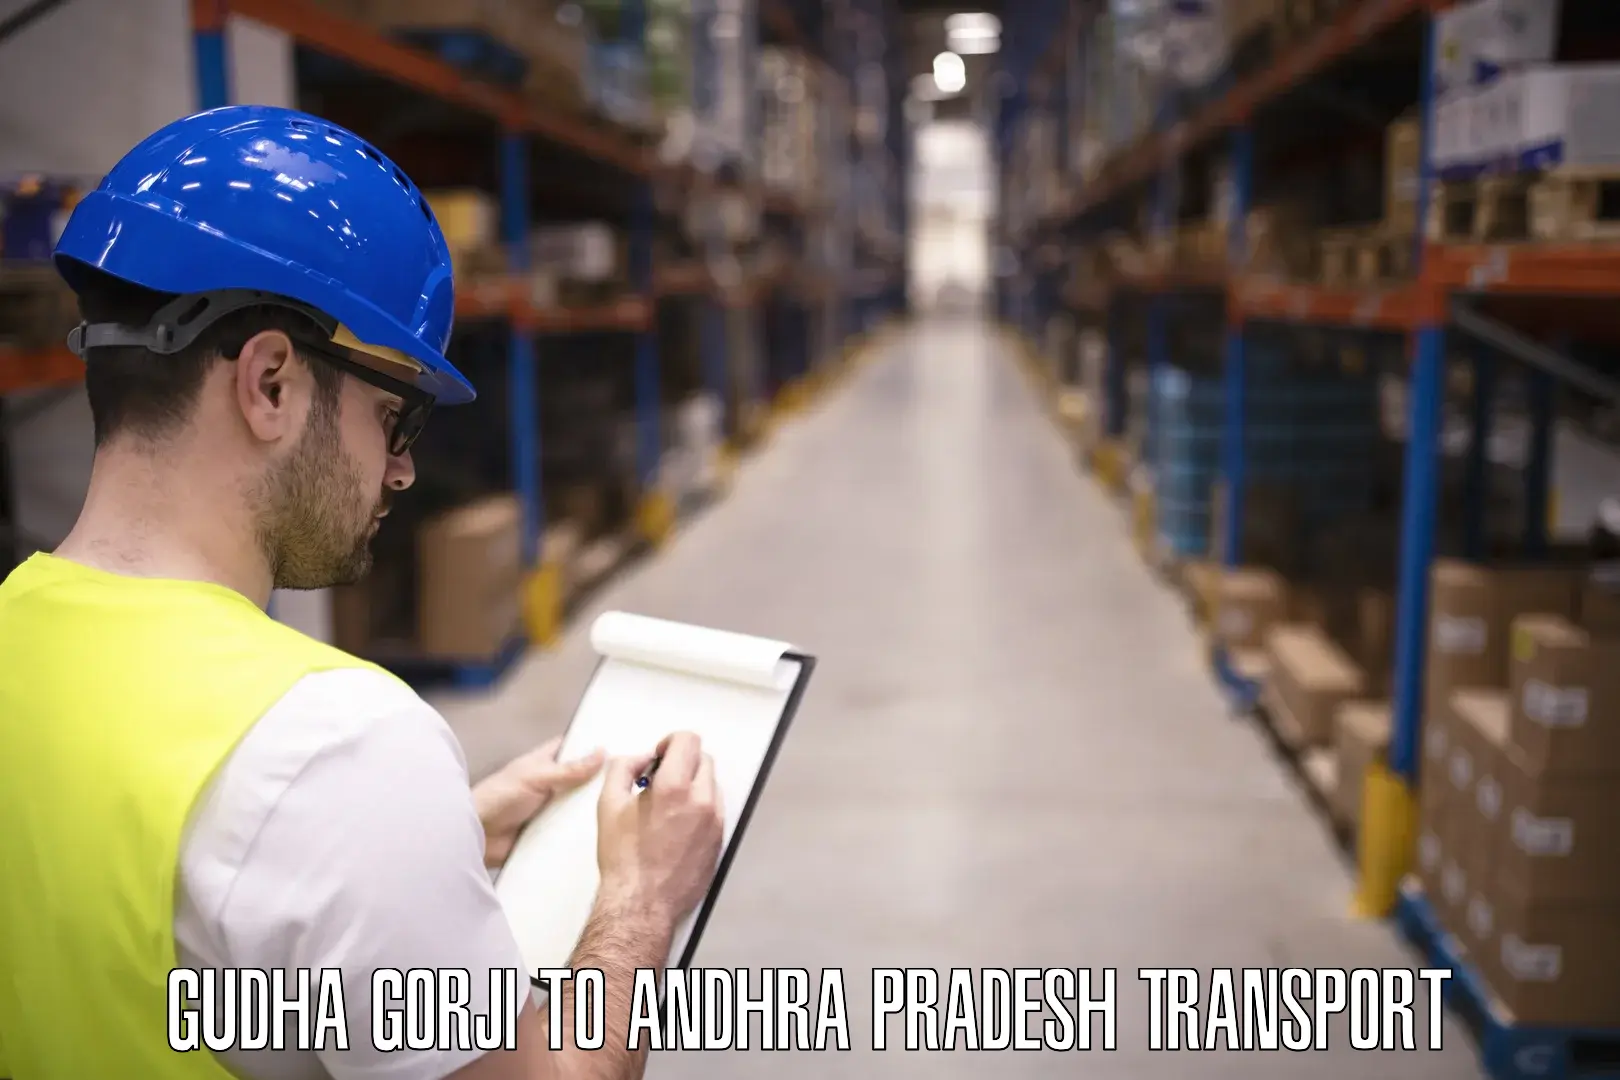 Cargo transport services Gudha Gorji to Andhra Pradesh